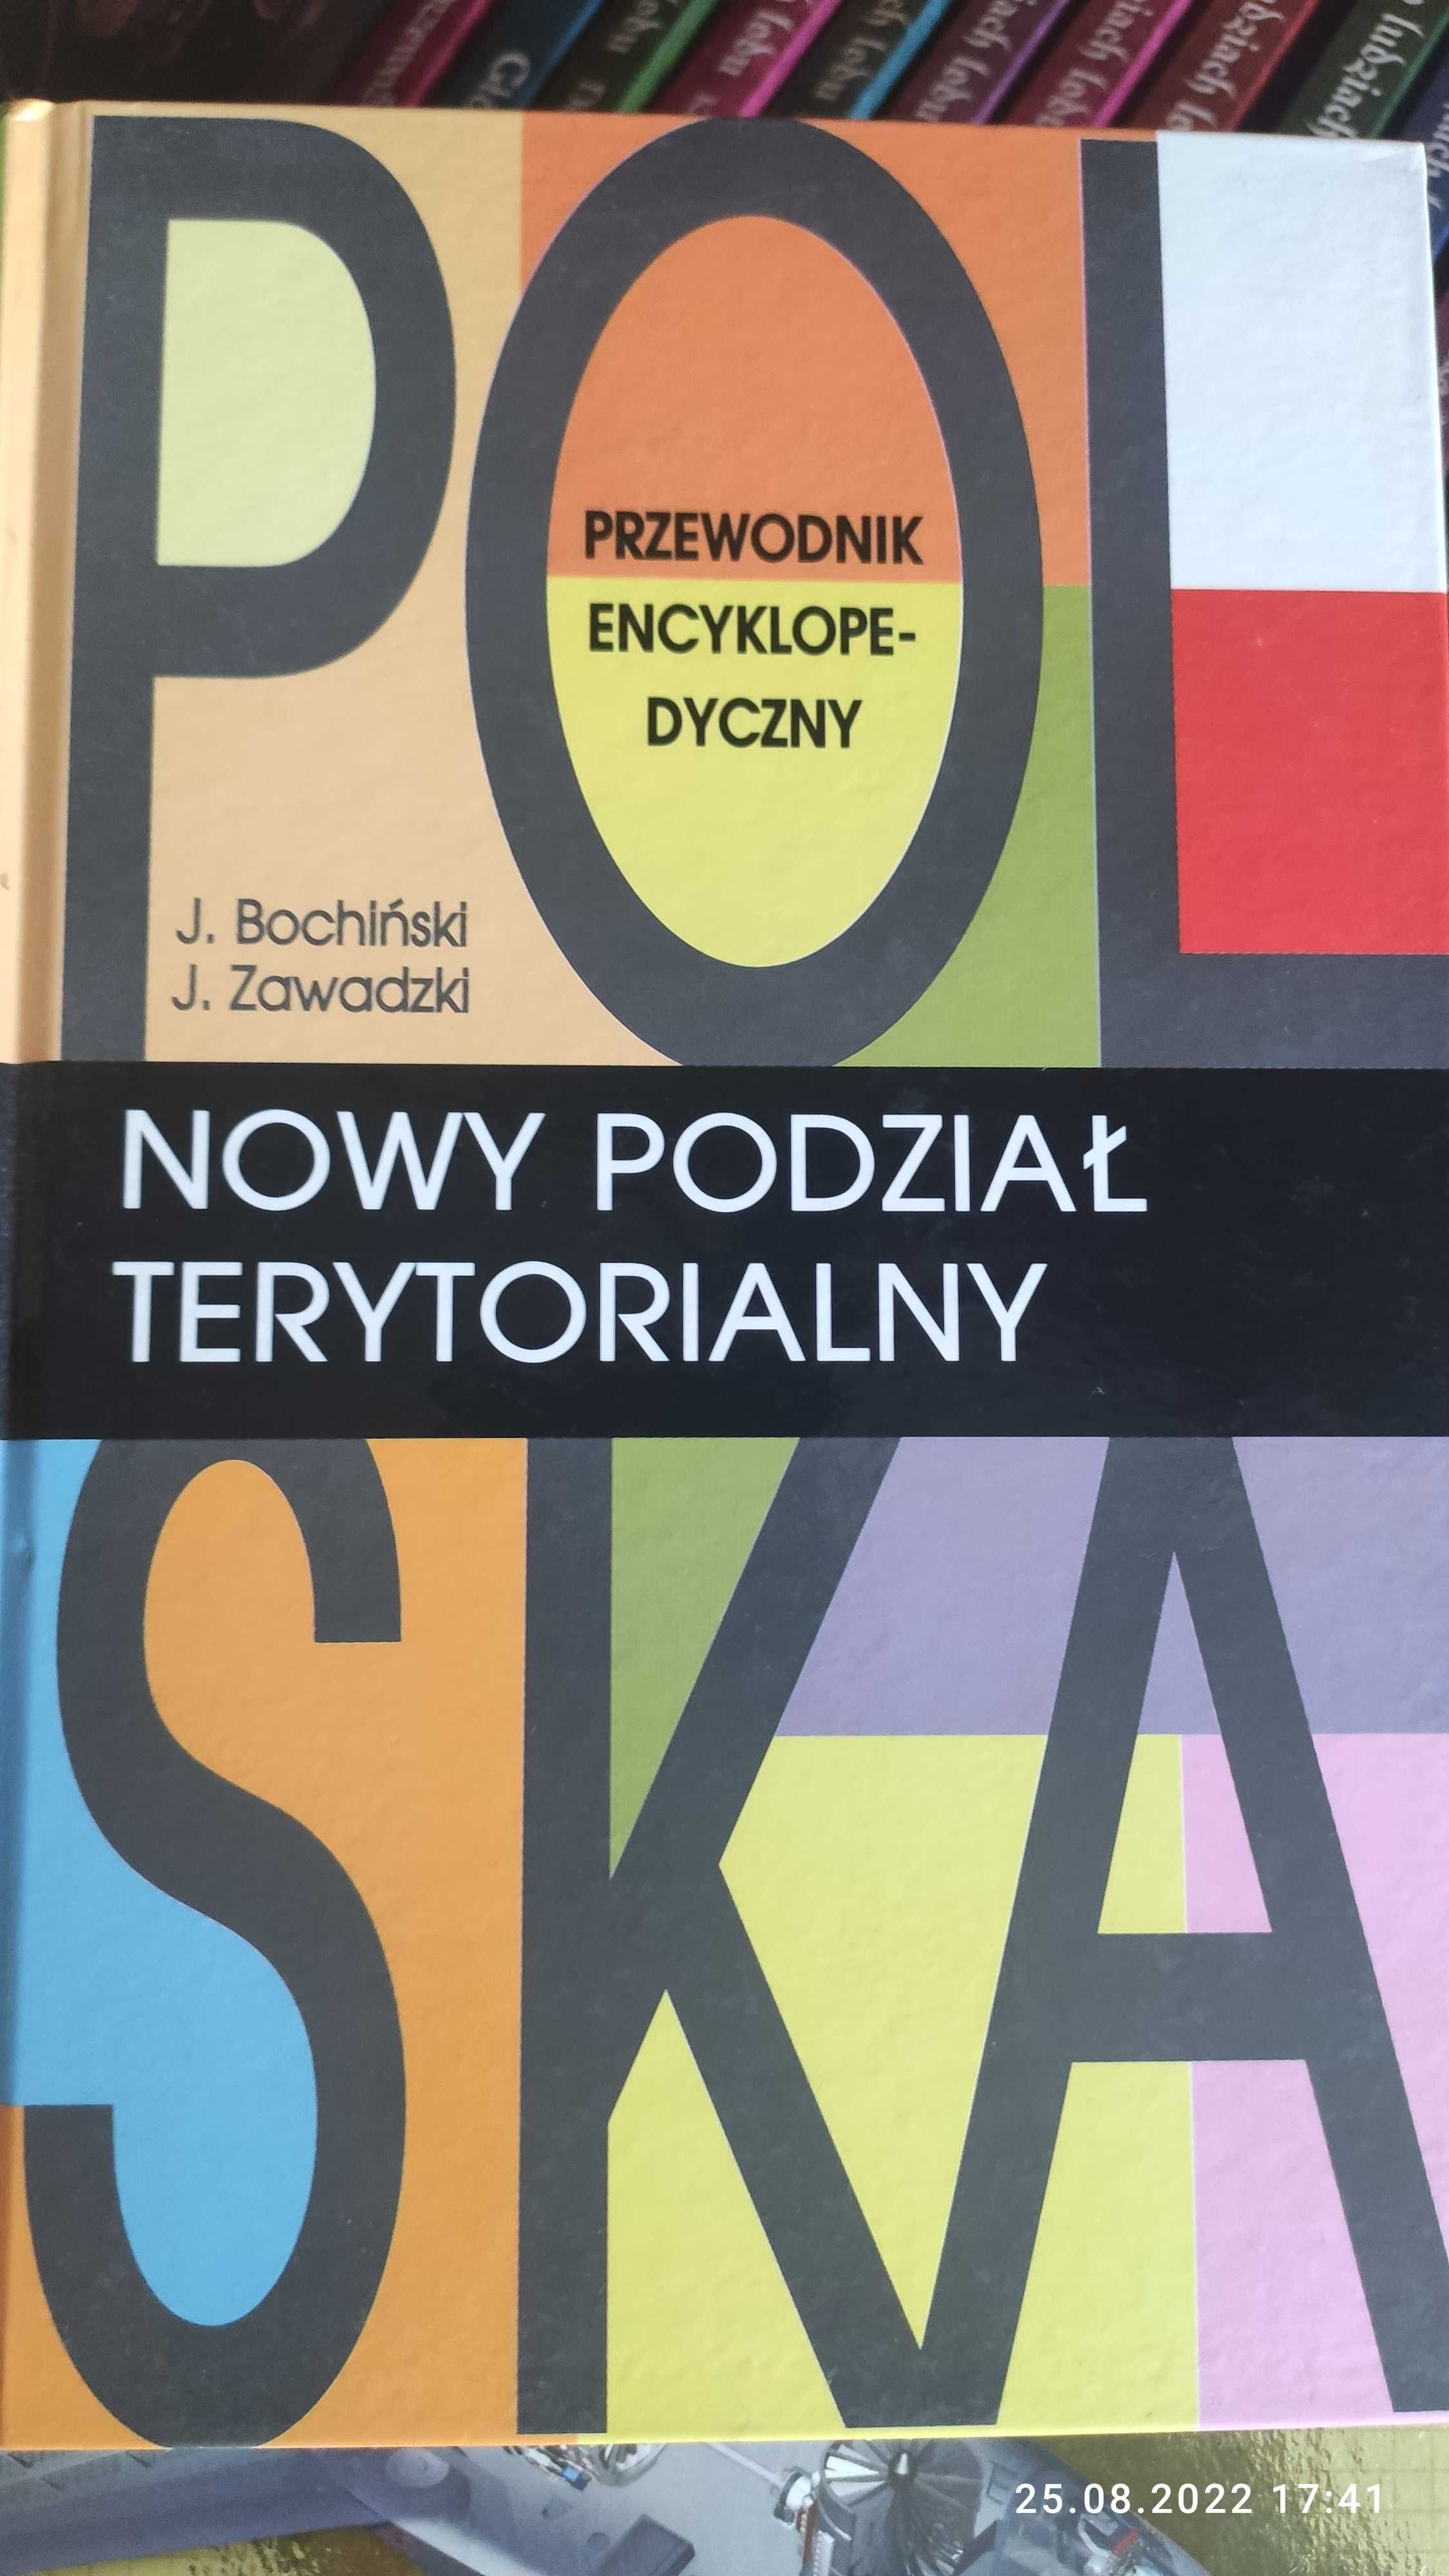 Polska Nowy podział terytorialny